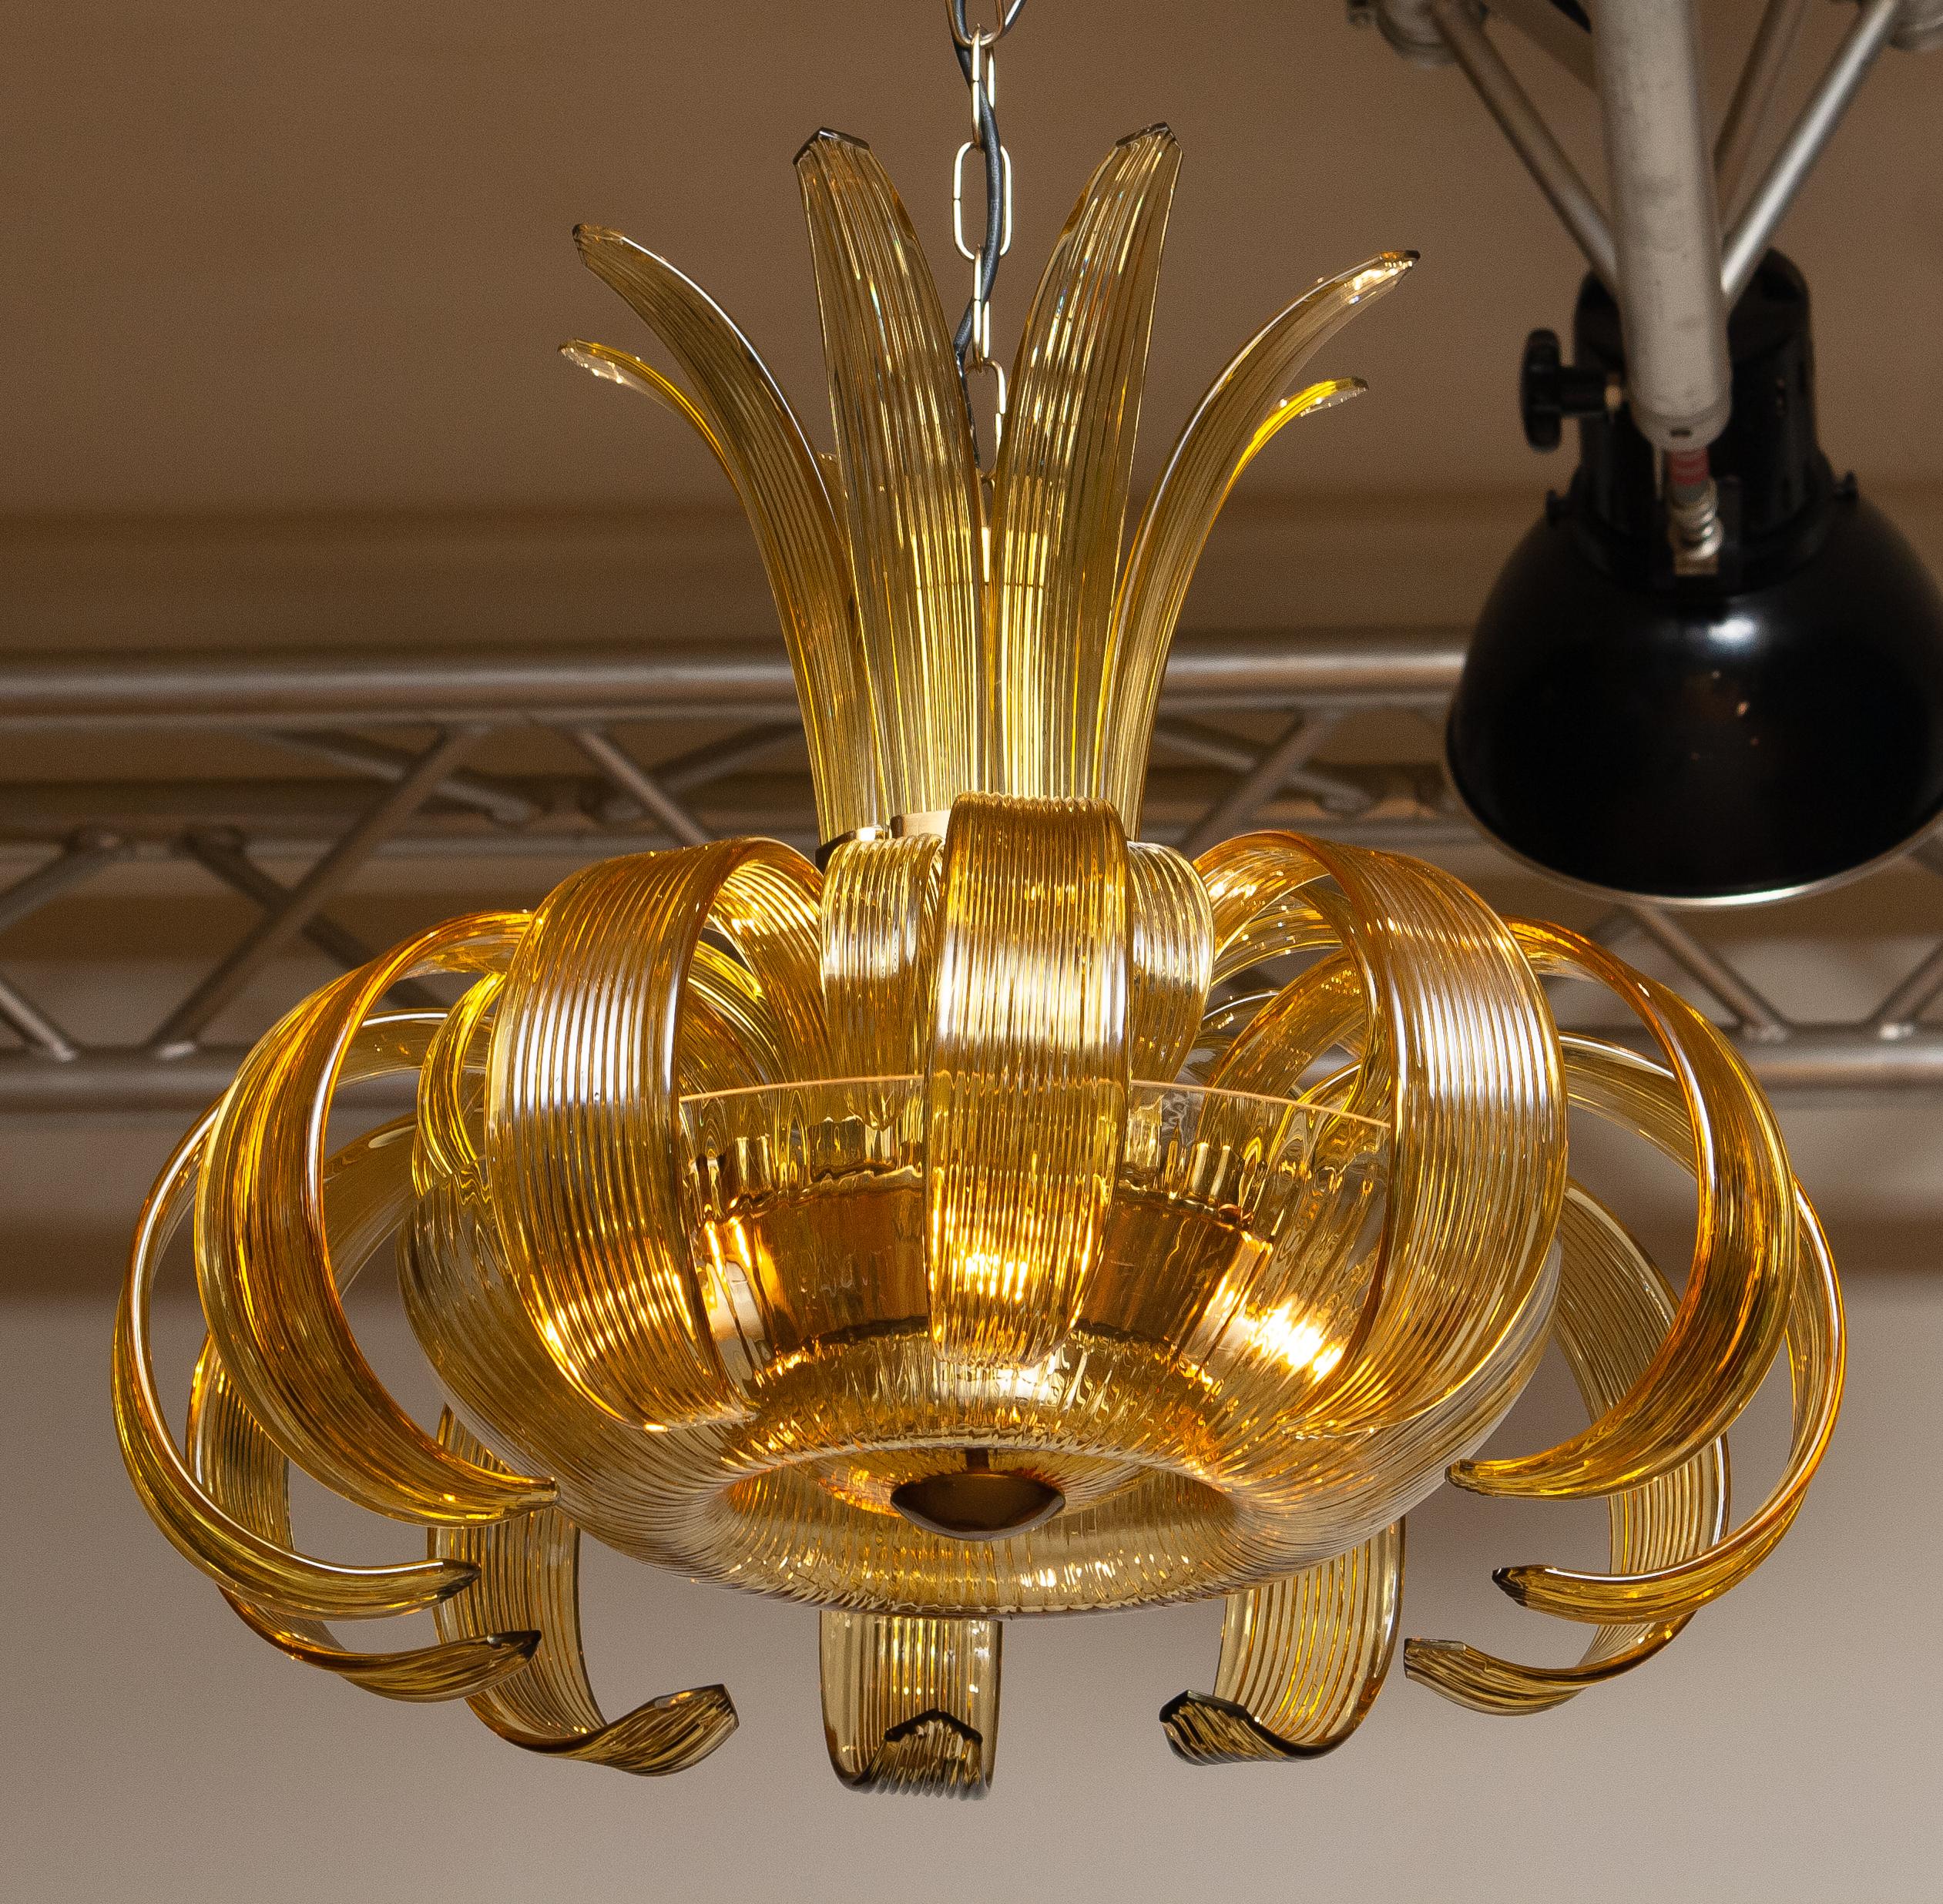 Très beau lustre en ambre des années 1950 fabriqué en République tchèque. Le tout en véritable Cristal de Bohême (marqué).
Tous en bon état et techniquement à 100%. Le lustre se compose de quatre raccords à vis E14 / E17.
Dimensions, chaîne